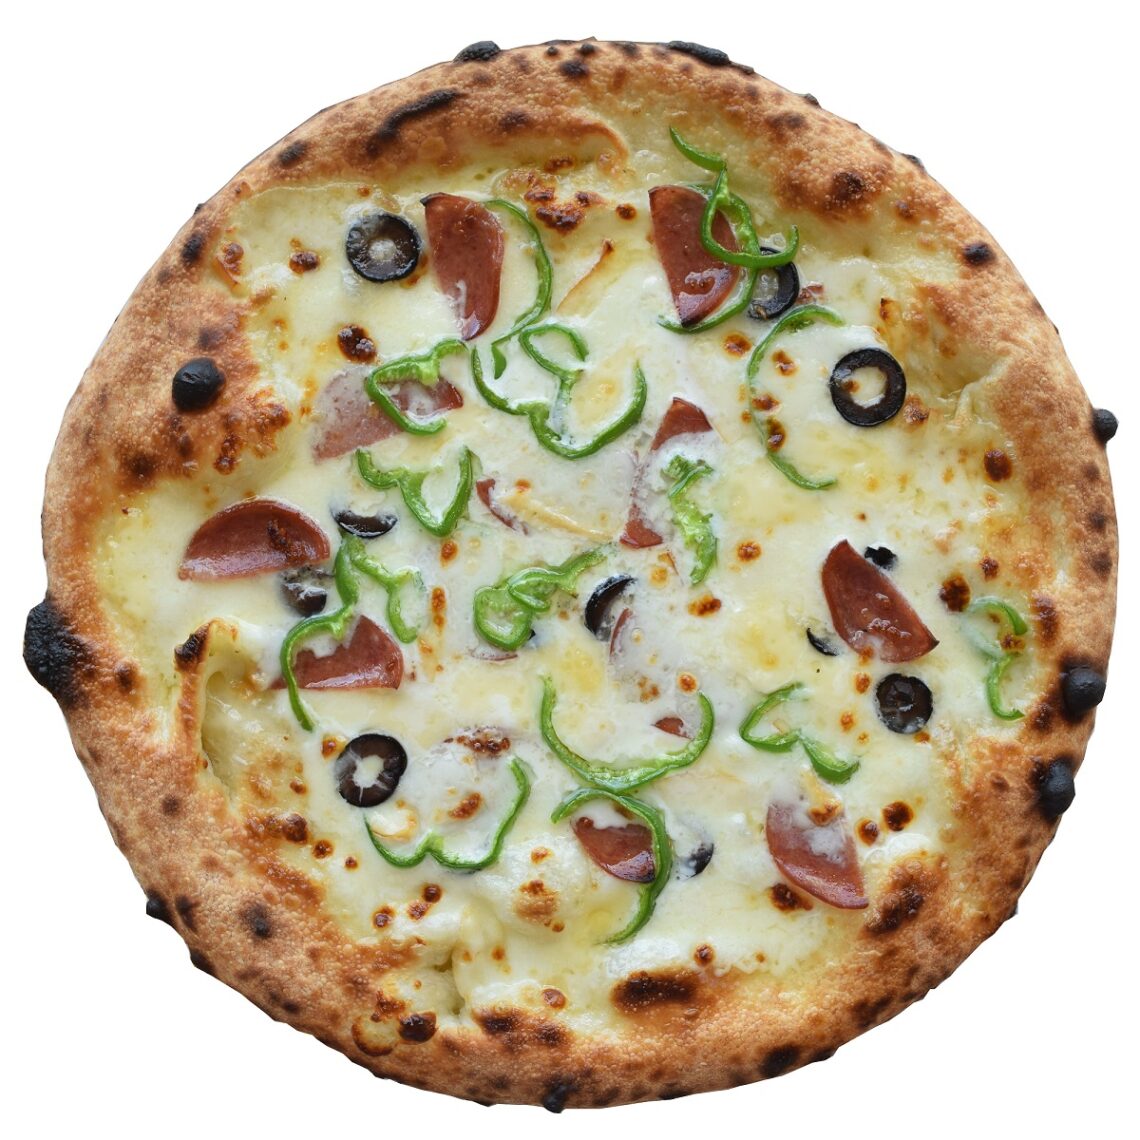 スモークチーズとサラミのピザ
Smoked Cheese & Salami Pizza
1,600 円(税込)